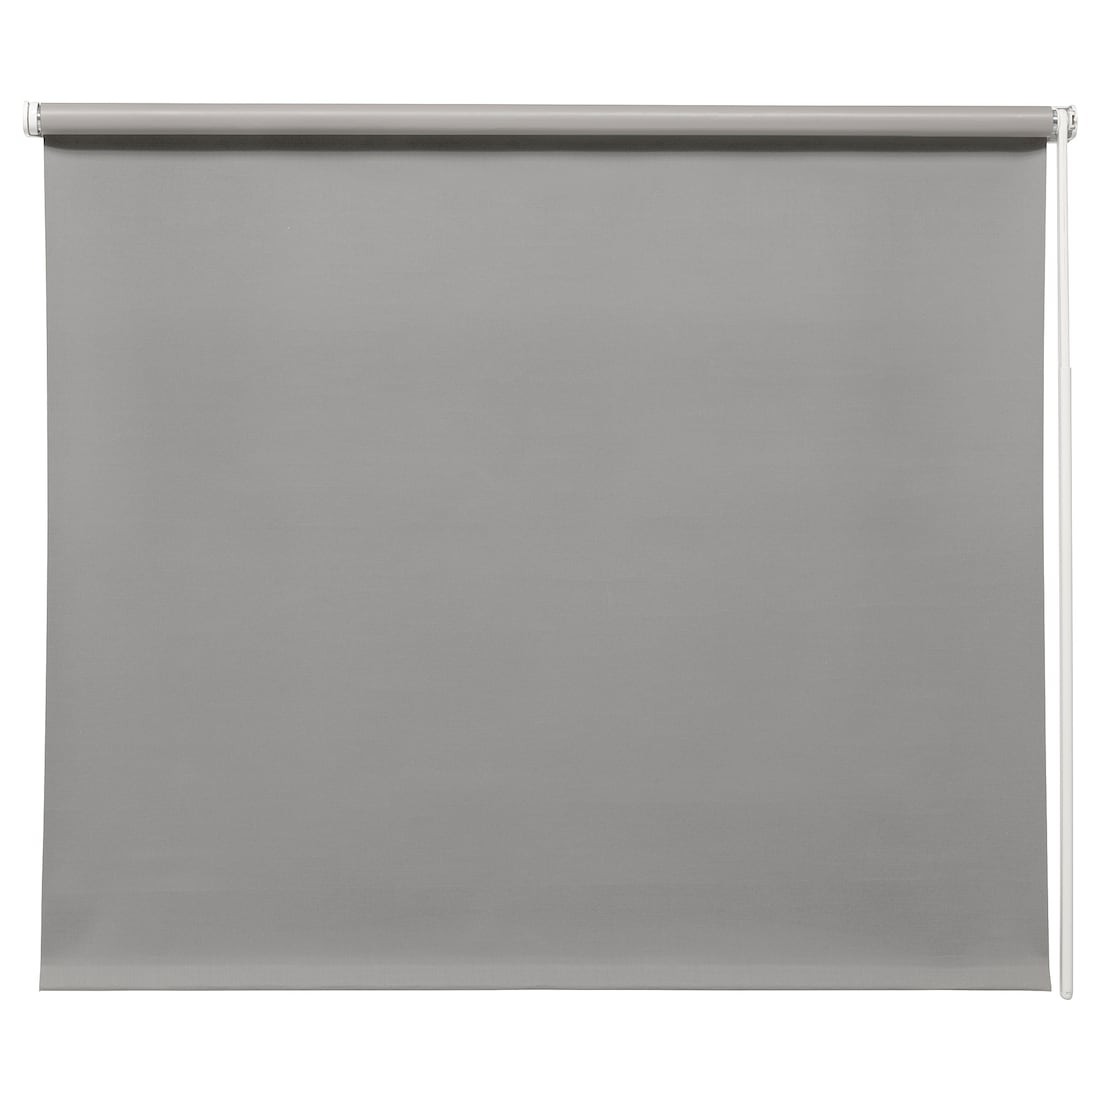 IKEA FRIDANS ФРІДАНС Блокуюча світло рулонна штора, сірий, 200x195 cм 20396929 203.969.29